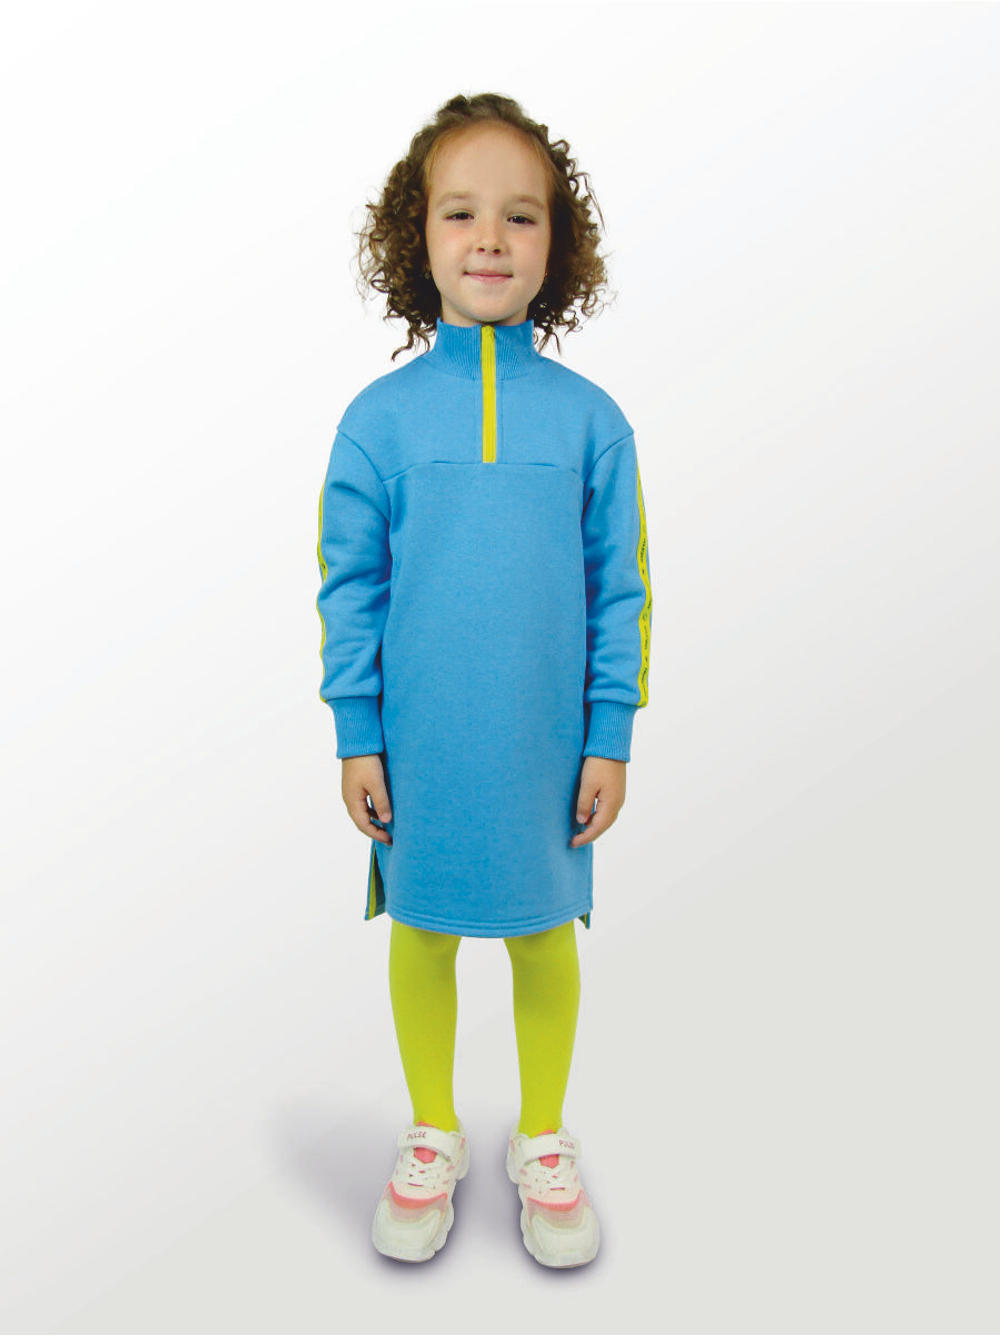 Платье для девочки, модель №1, рост 116 см, голубое